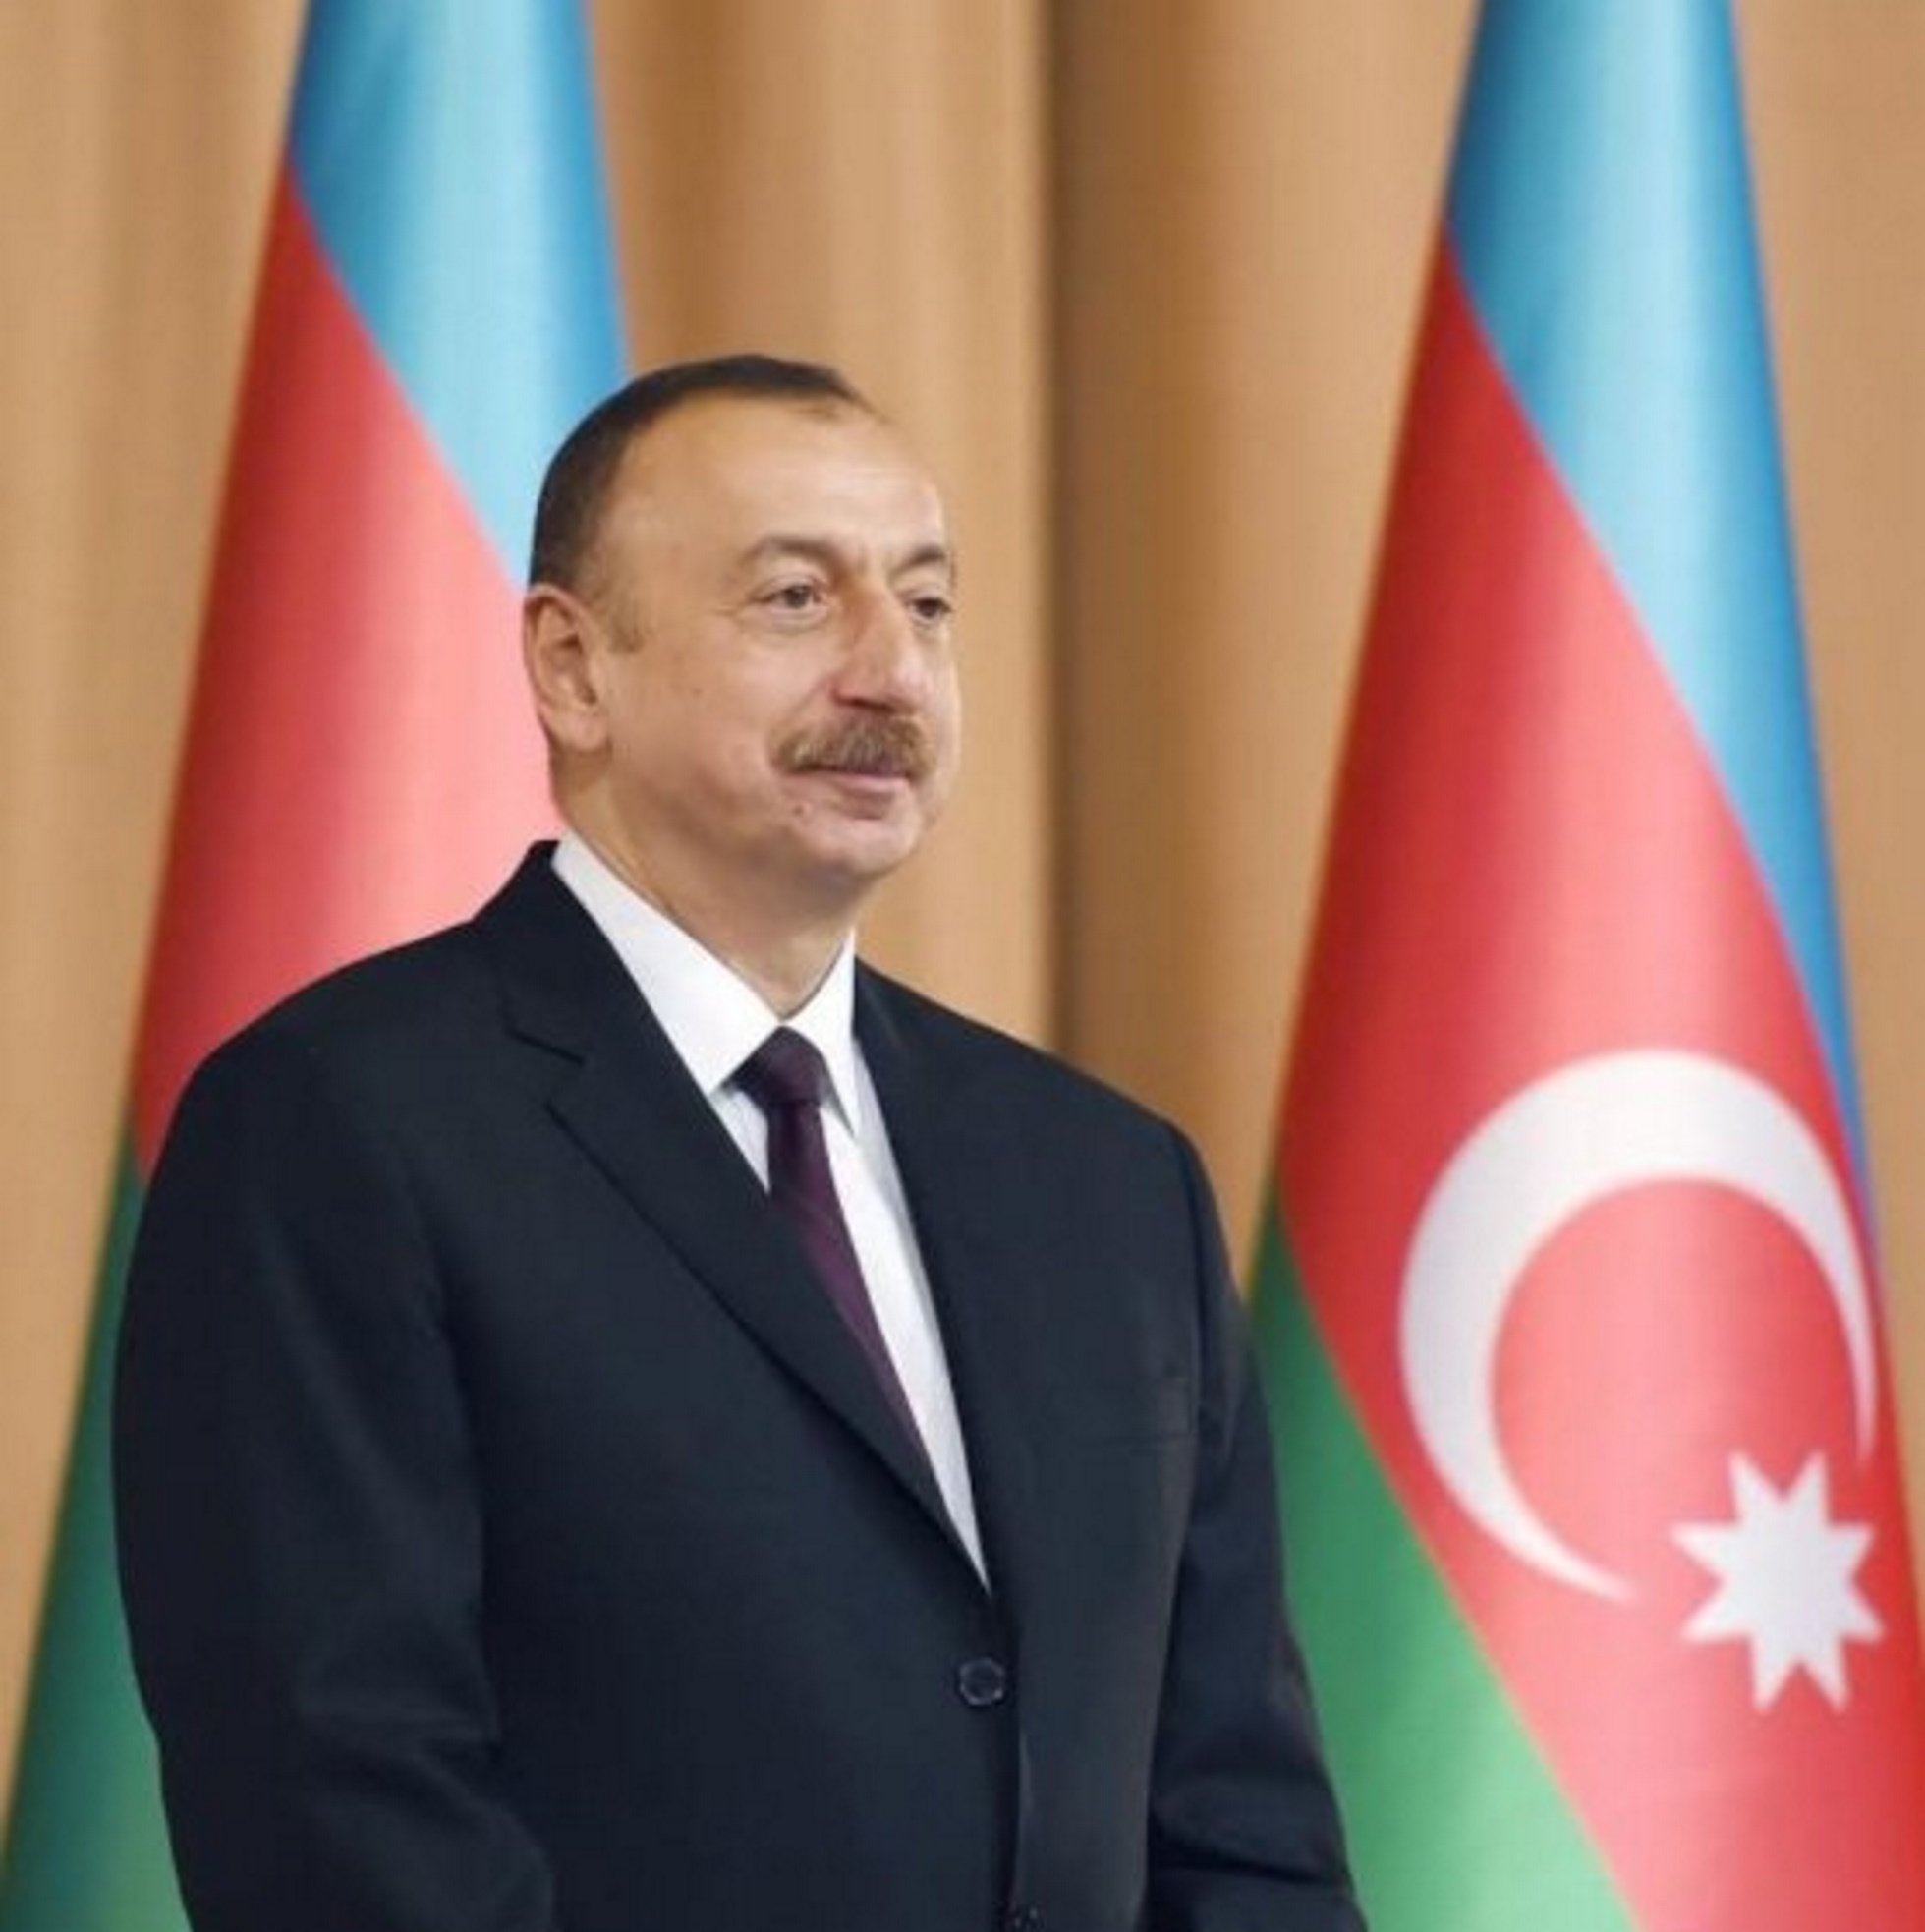 Vídeo: El president d'Azerbaidjan: "Catalunya té dret a l'autodeterminació?"